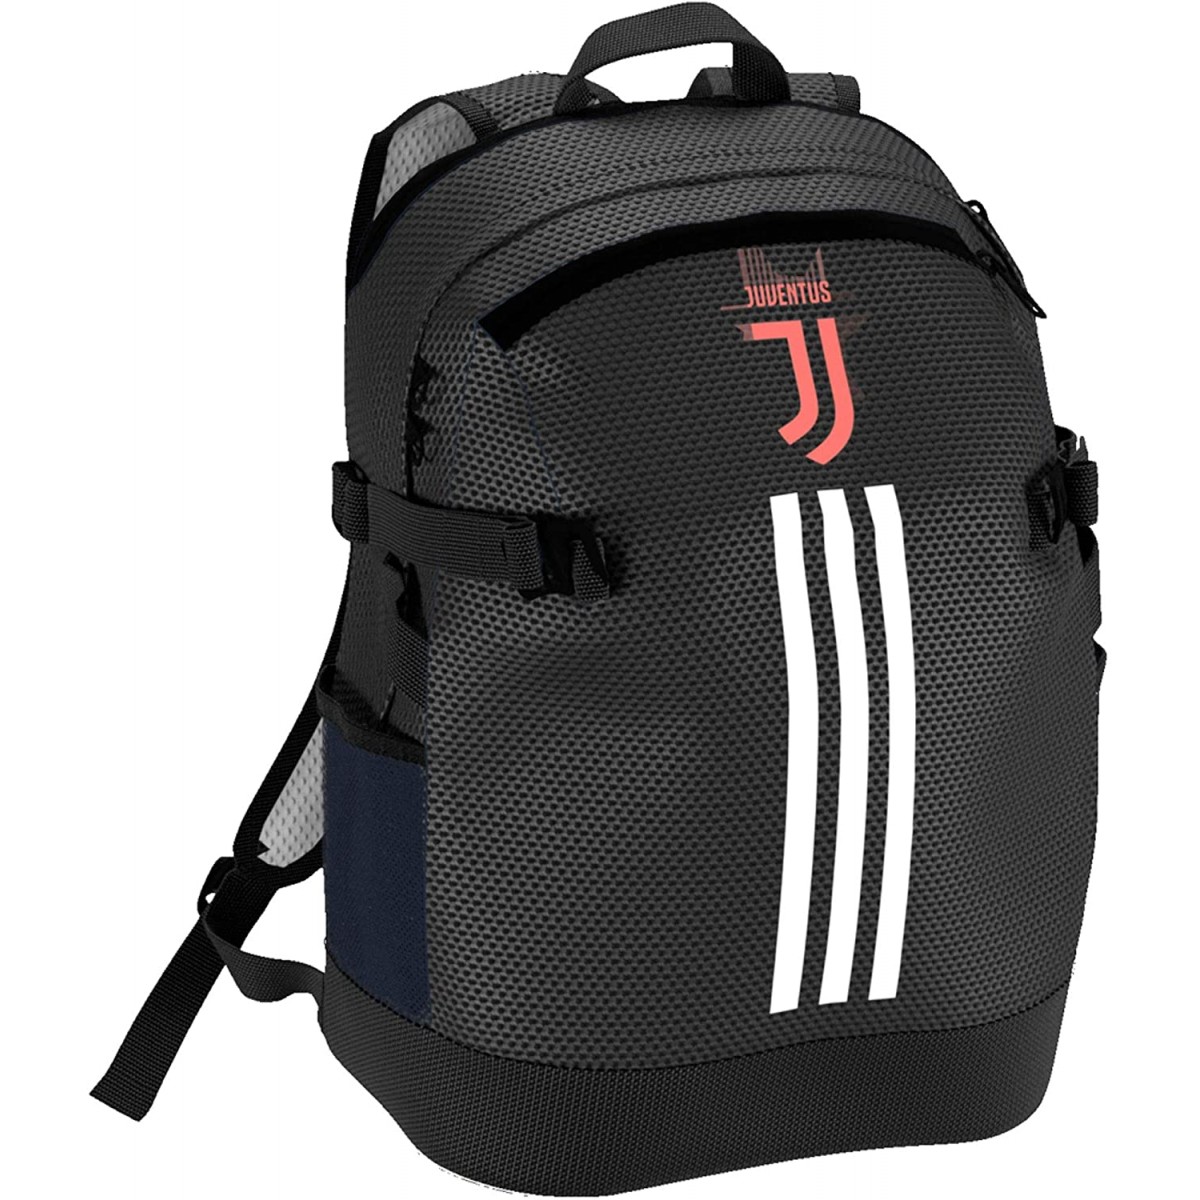 Zainetto scuola Juventus - Adidas, prodotto ufficiale